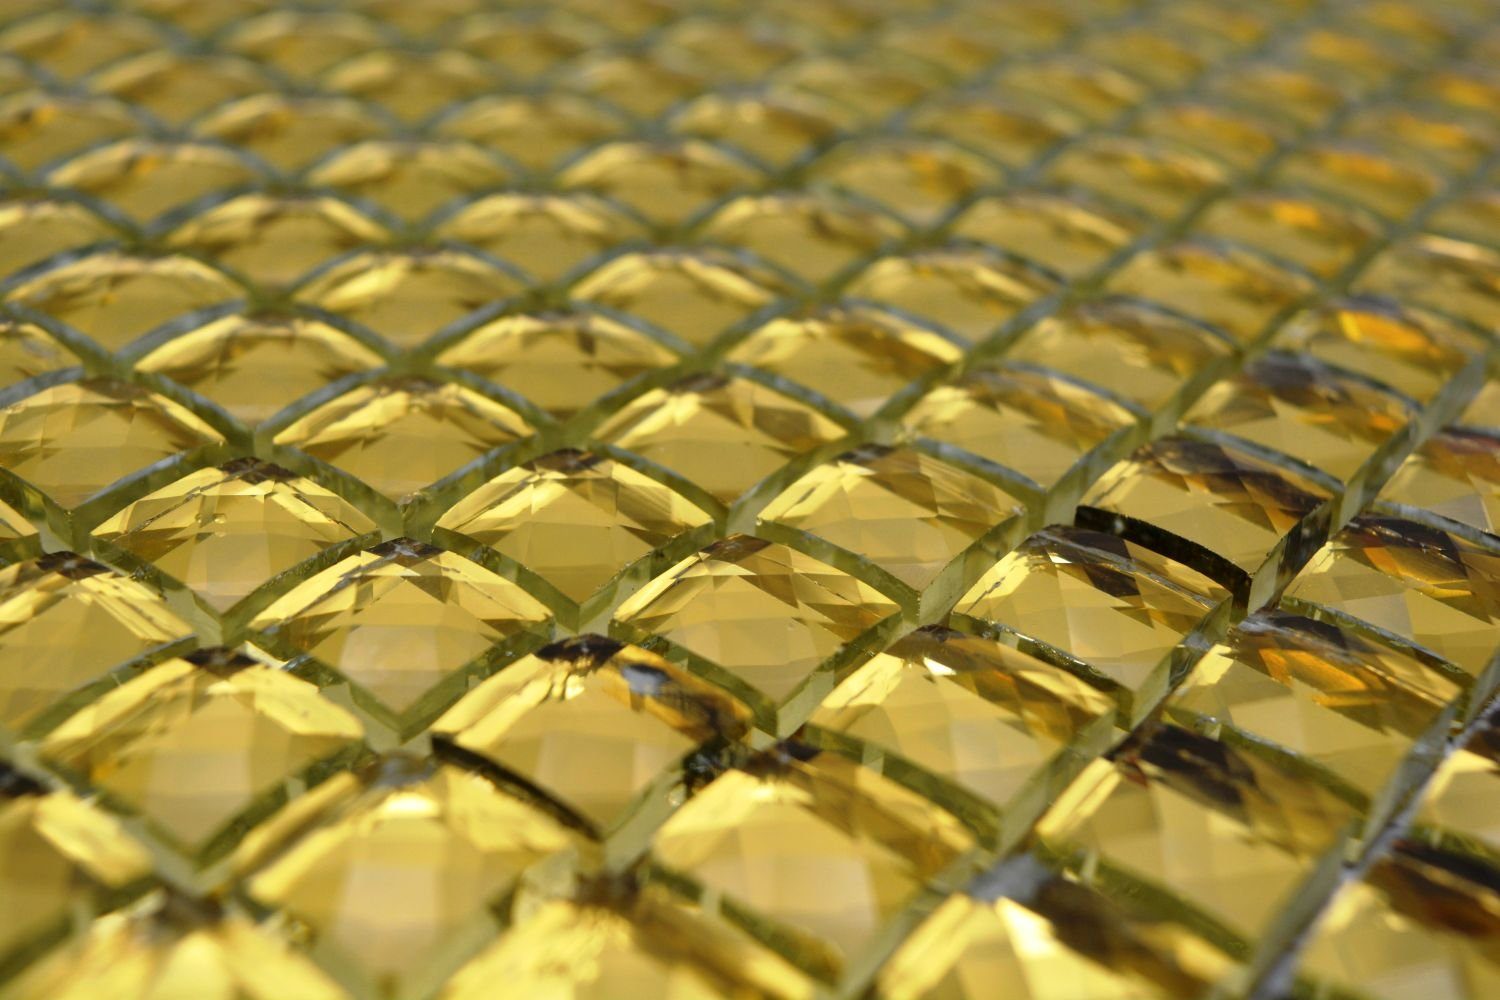 Diamant Wand Mosaikfliesen Goldfliese glänzend Glas Mosani Küche Gold Bad,